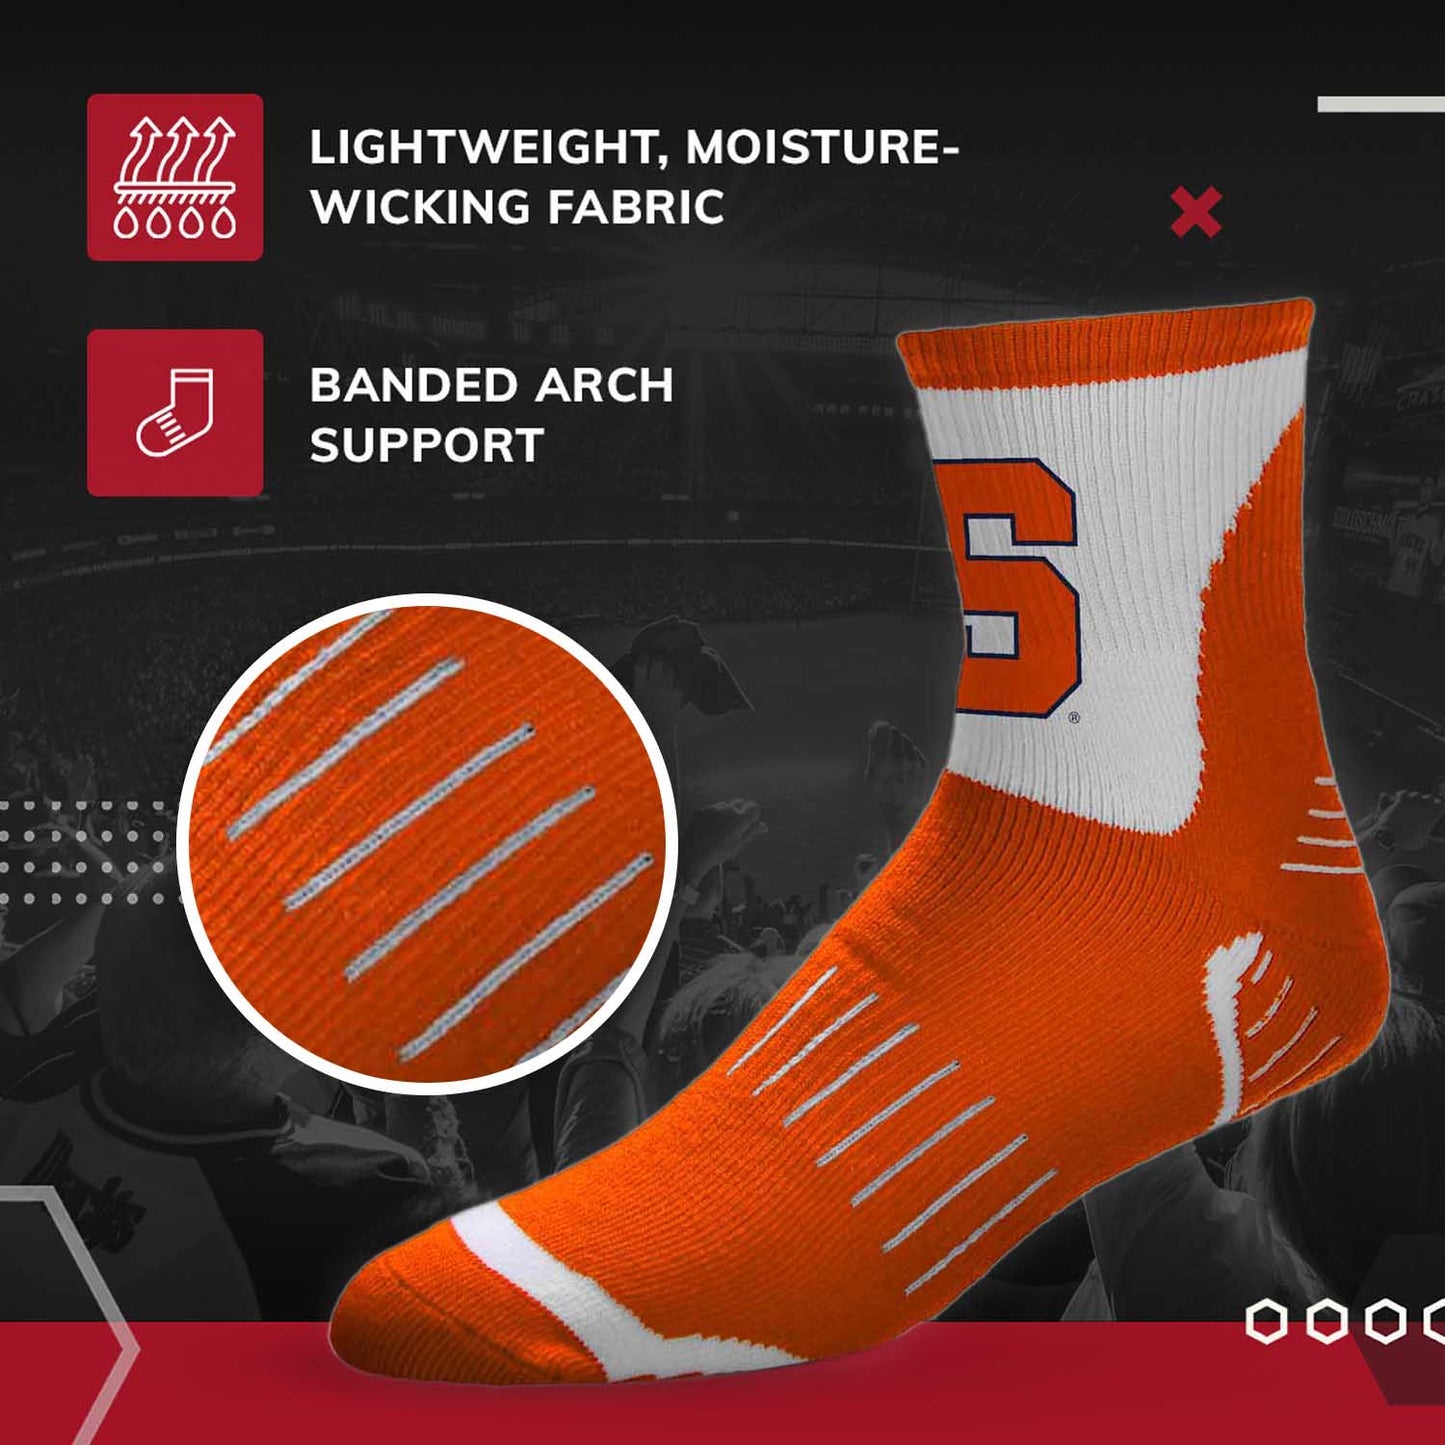 Syracuse Orange Adult NCAA Surge Quarter Length Crew Socks - Orange